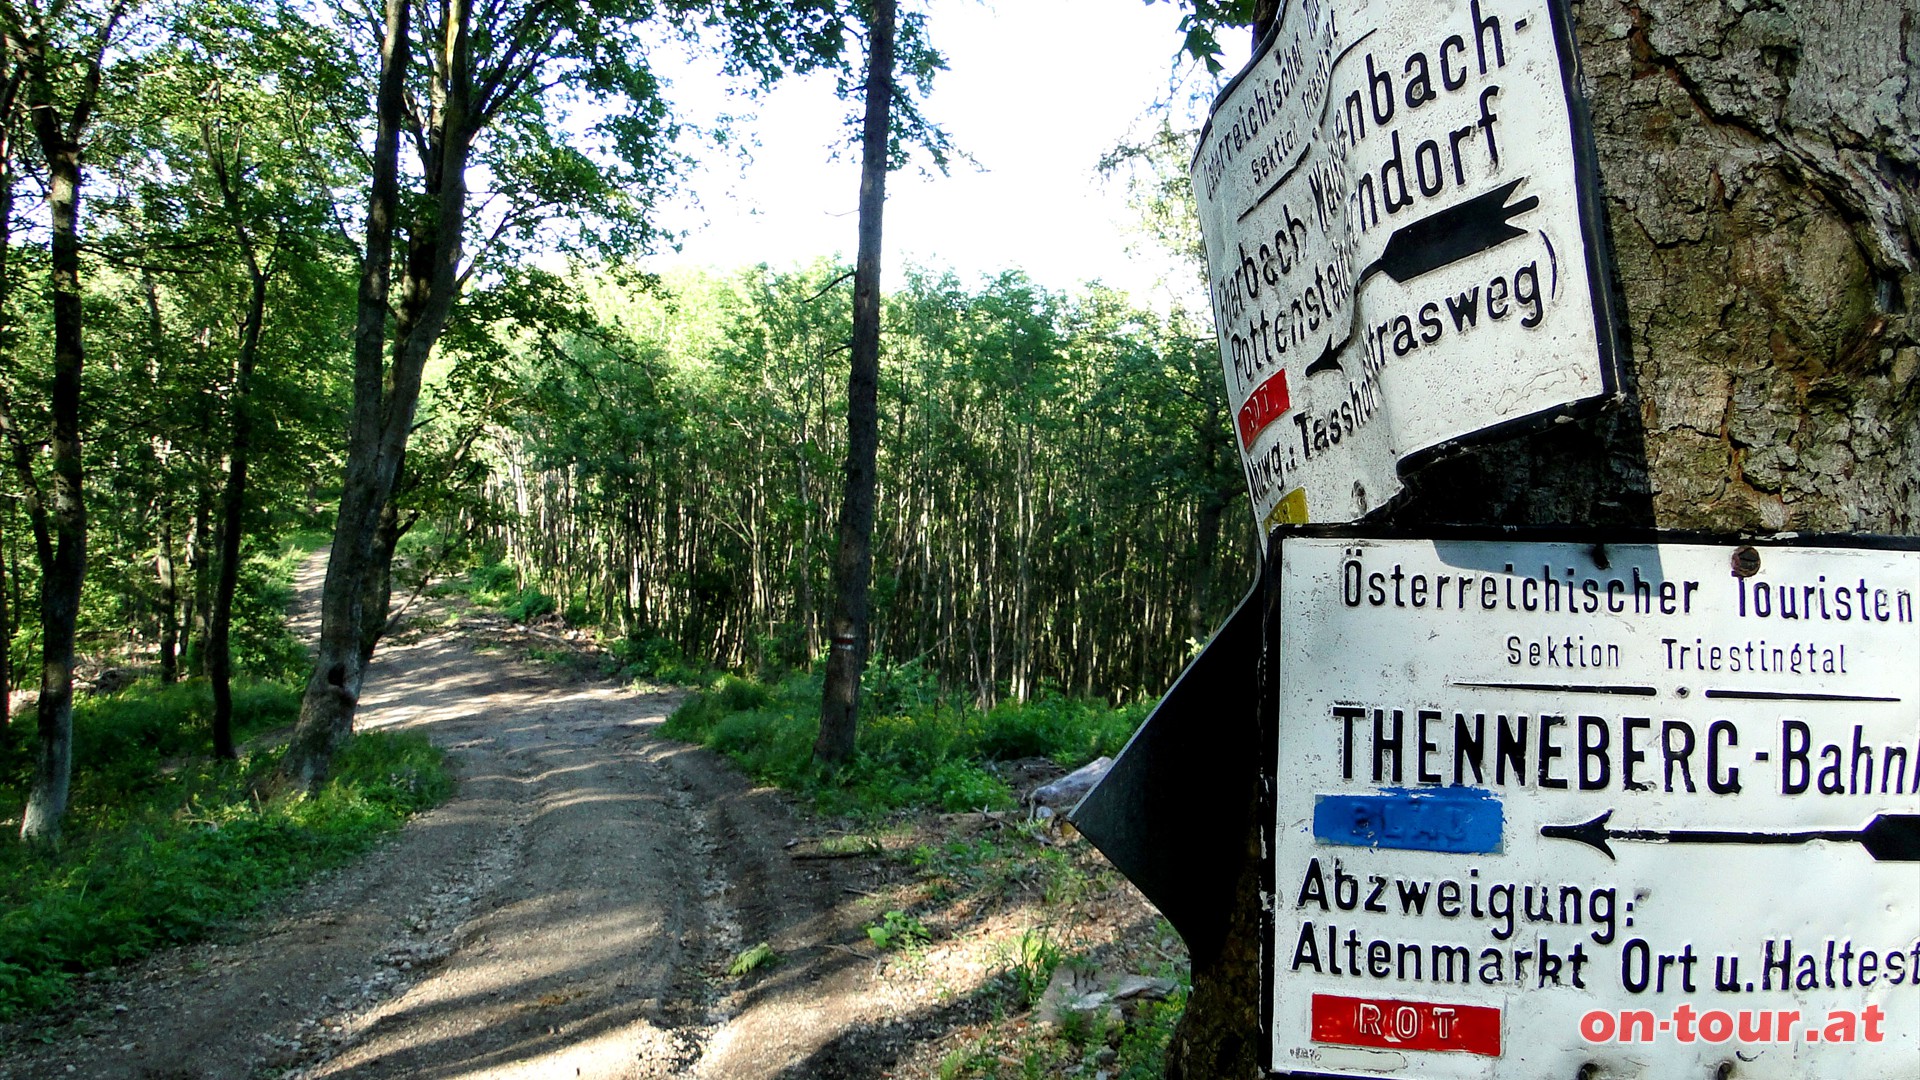 Zurck zum Kreuzungspunkt Eberbach-Weissenbach-Thenneberg.